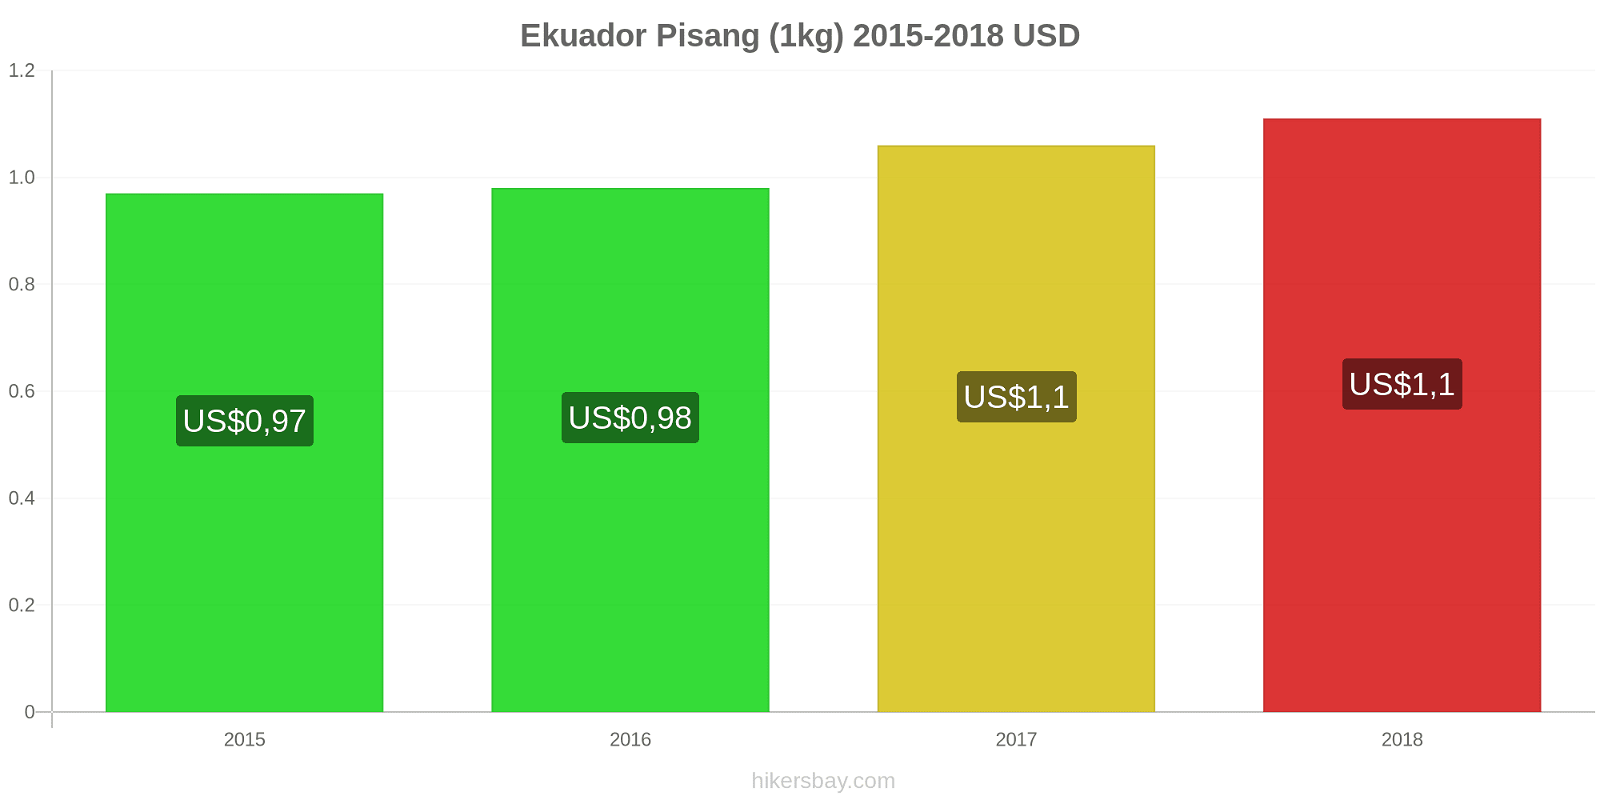 Ekuador perubahan harga Pisang (1kg) hikersbay.com